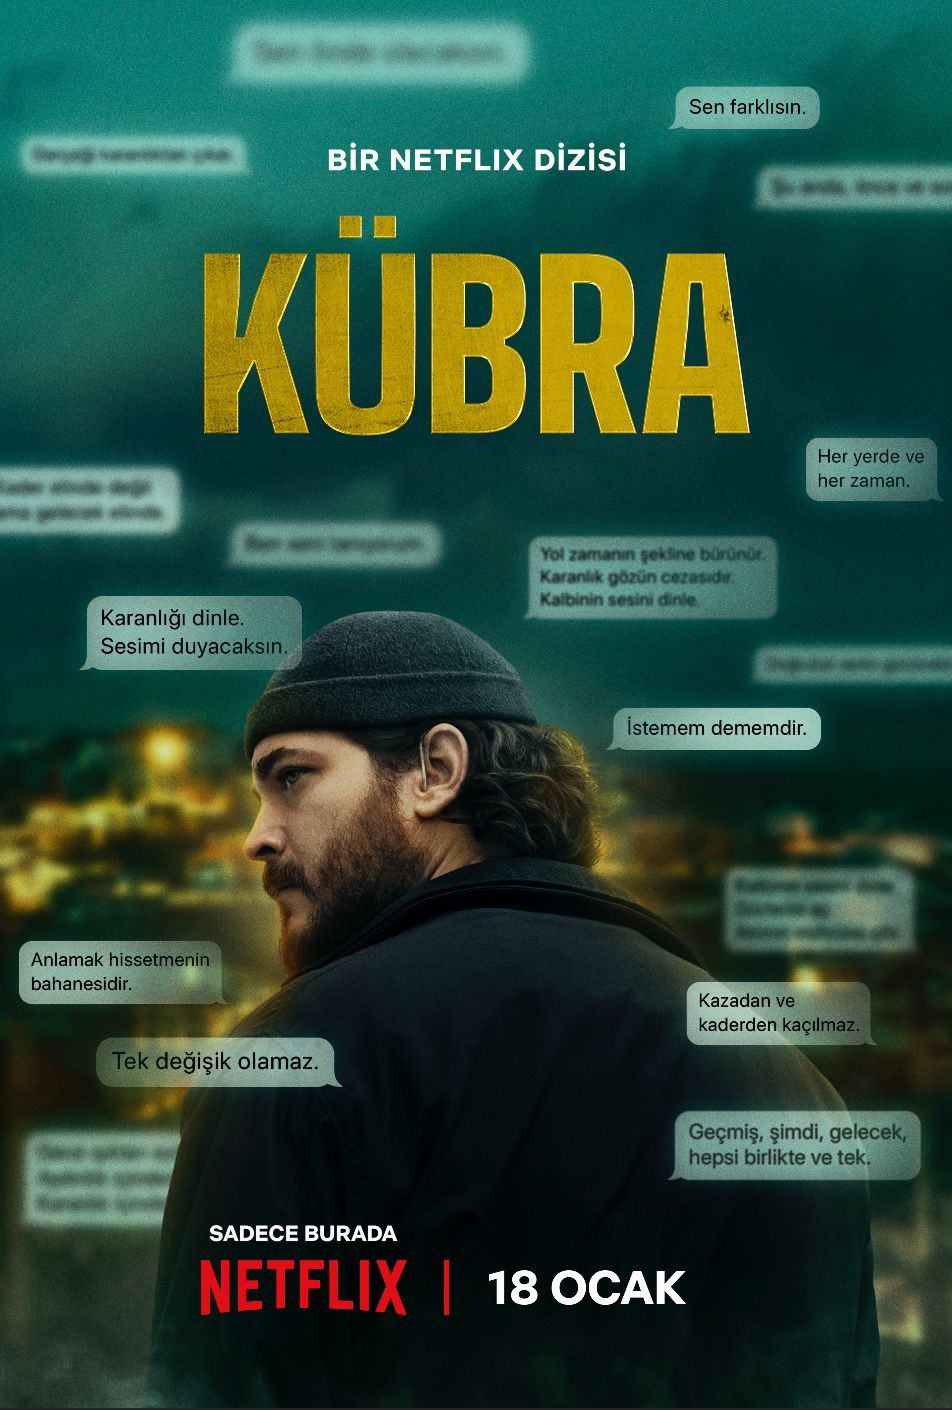 Çağatay Ulusoy’un yer aldığı Netflix'in yeni dizisi Kübra’nın resmi fragmanı - Sayfa 1